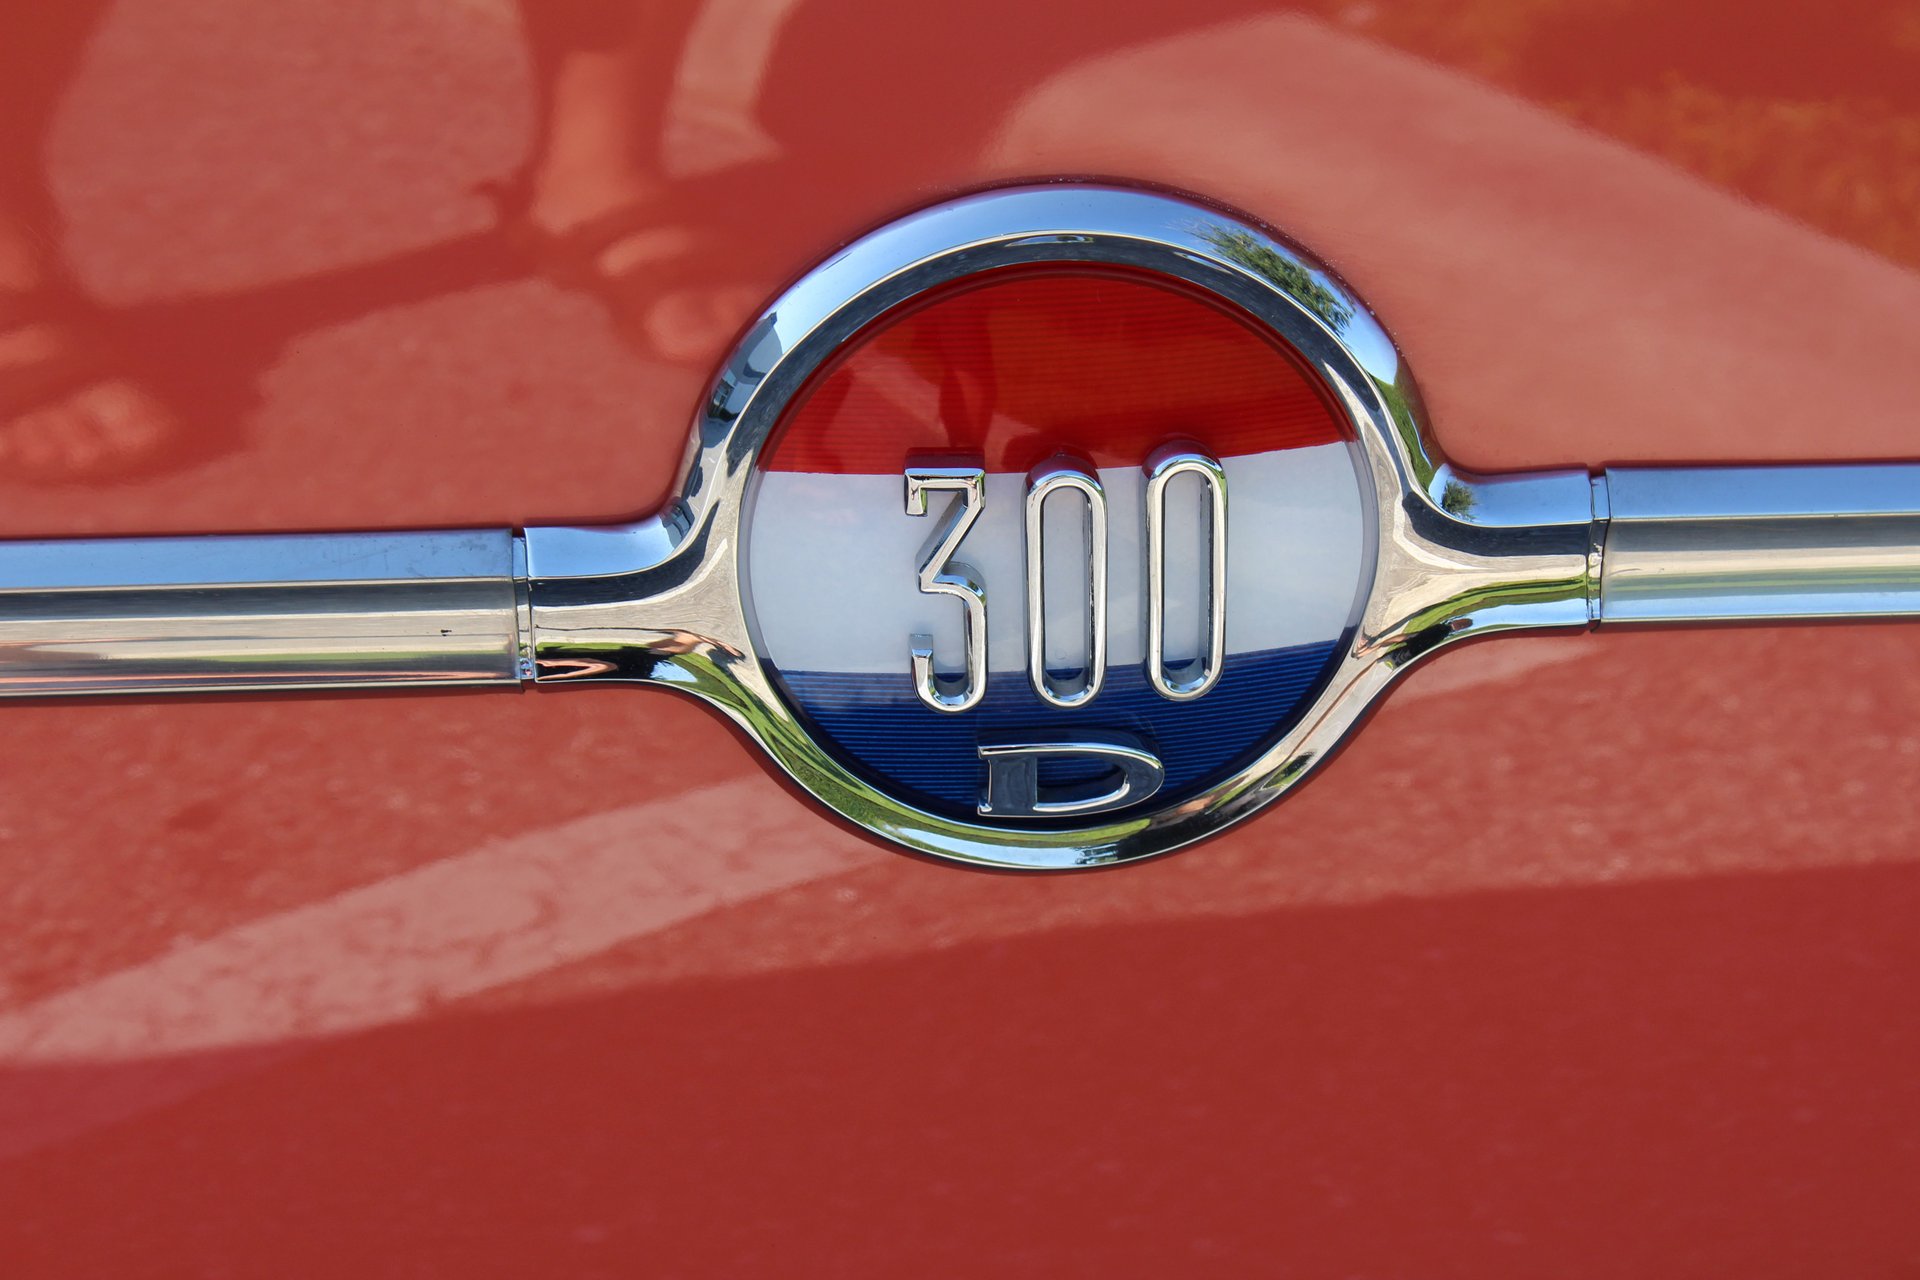 For Sale 1958 Chrysler 300D